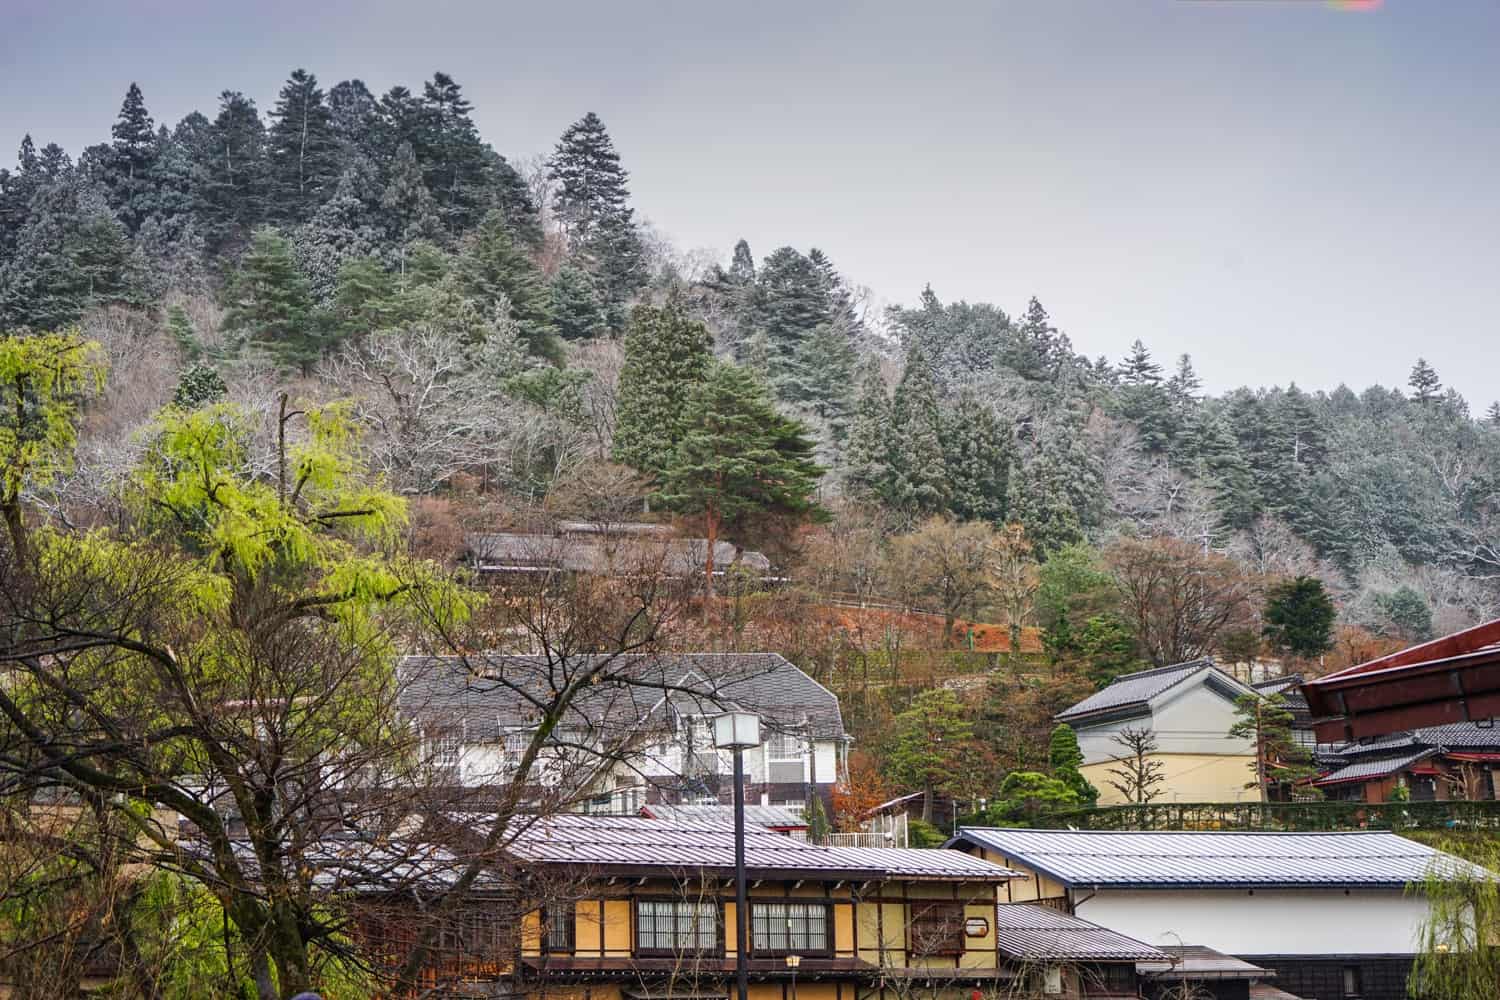 Takayama in December